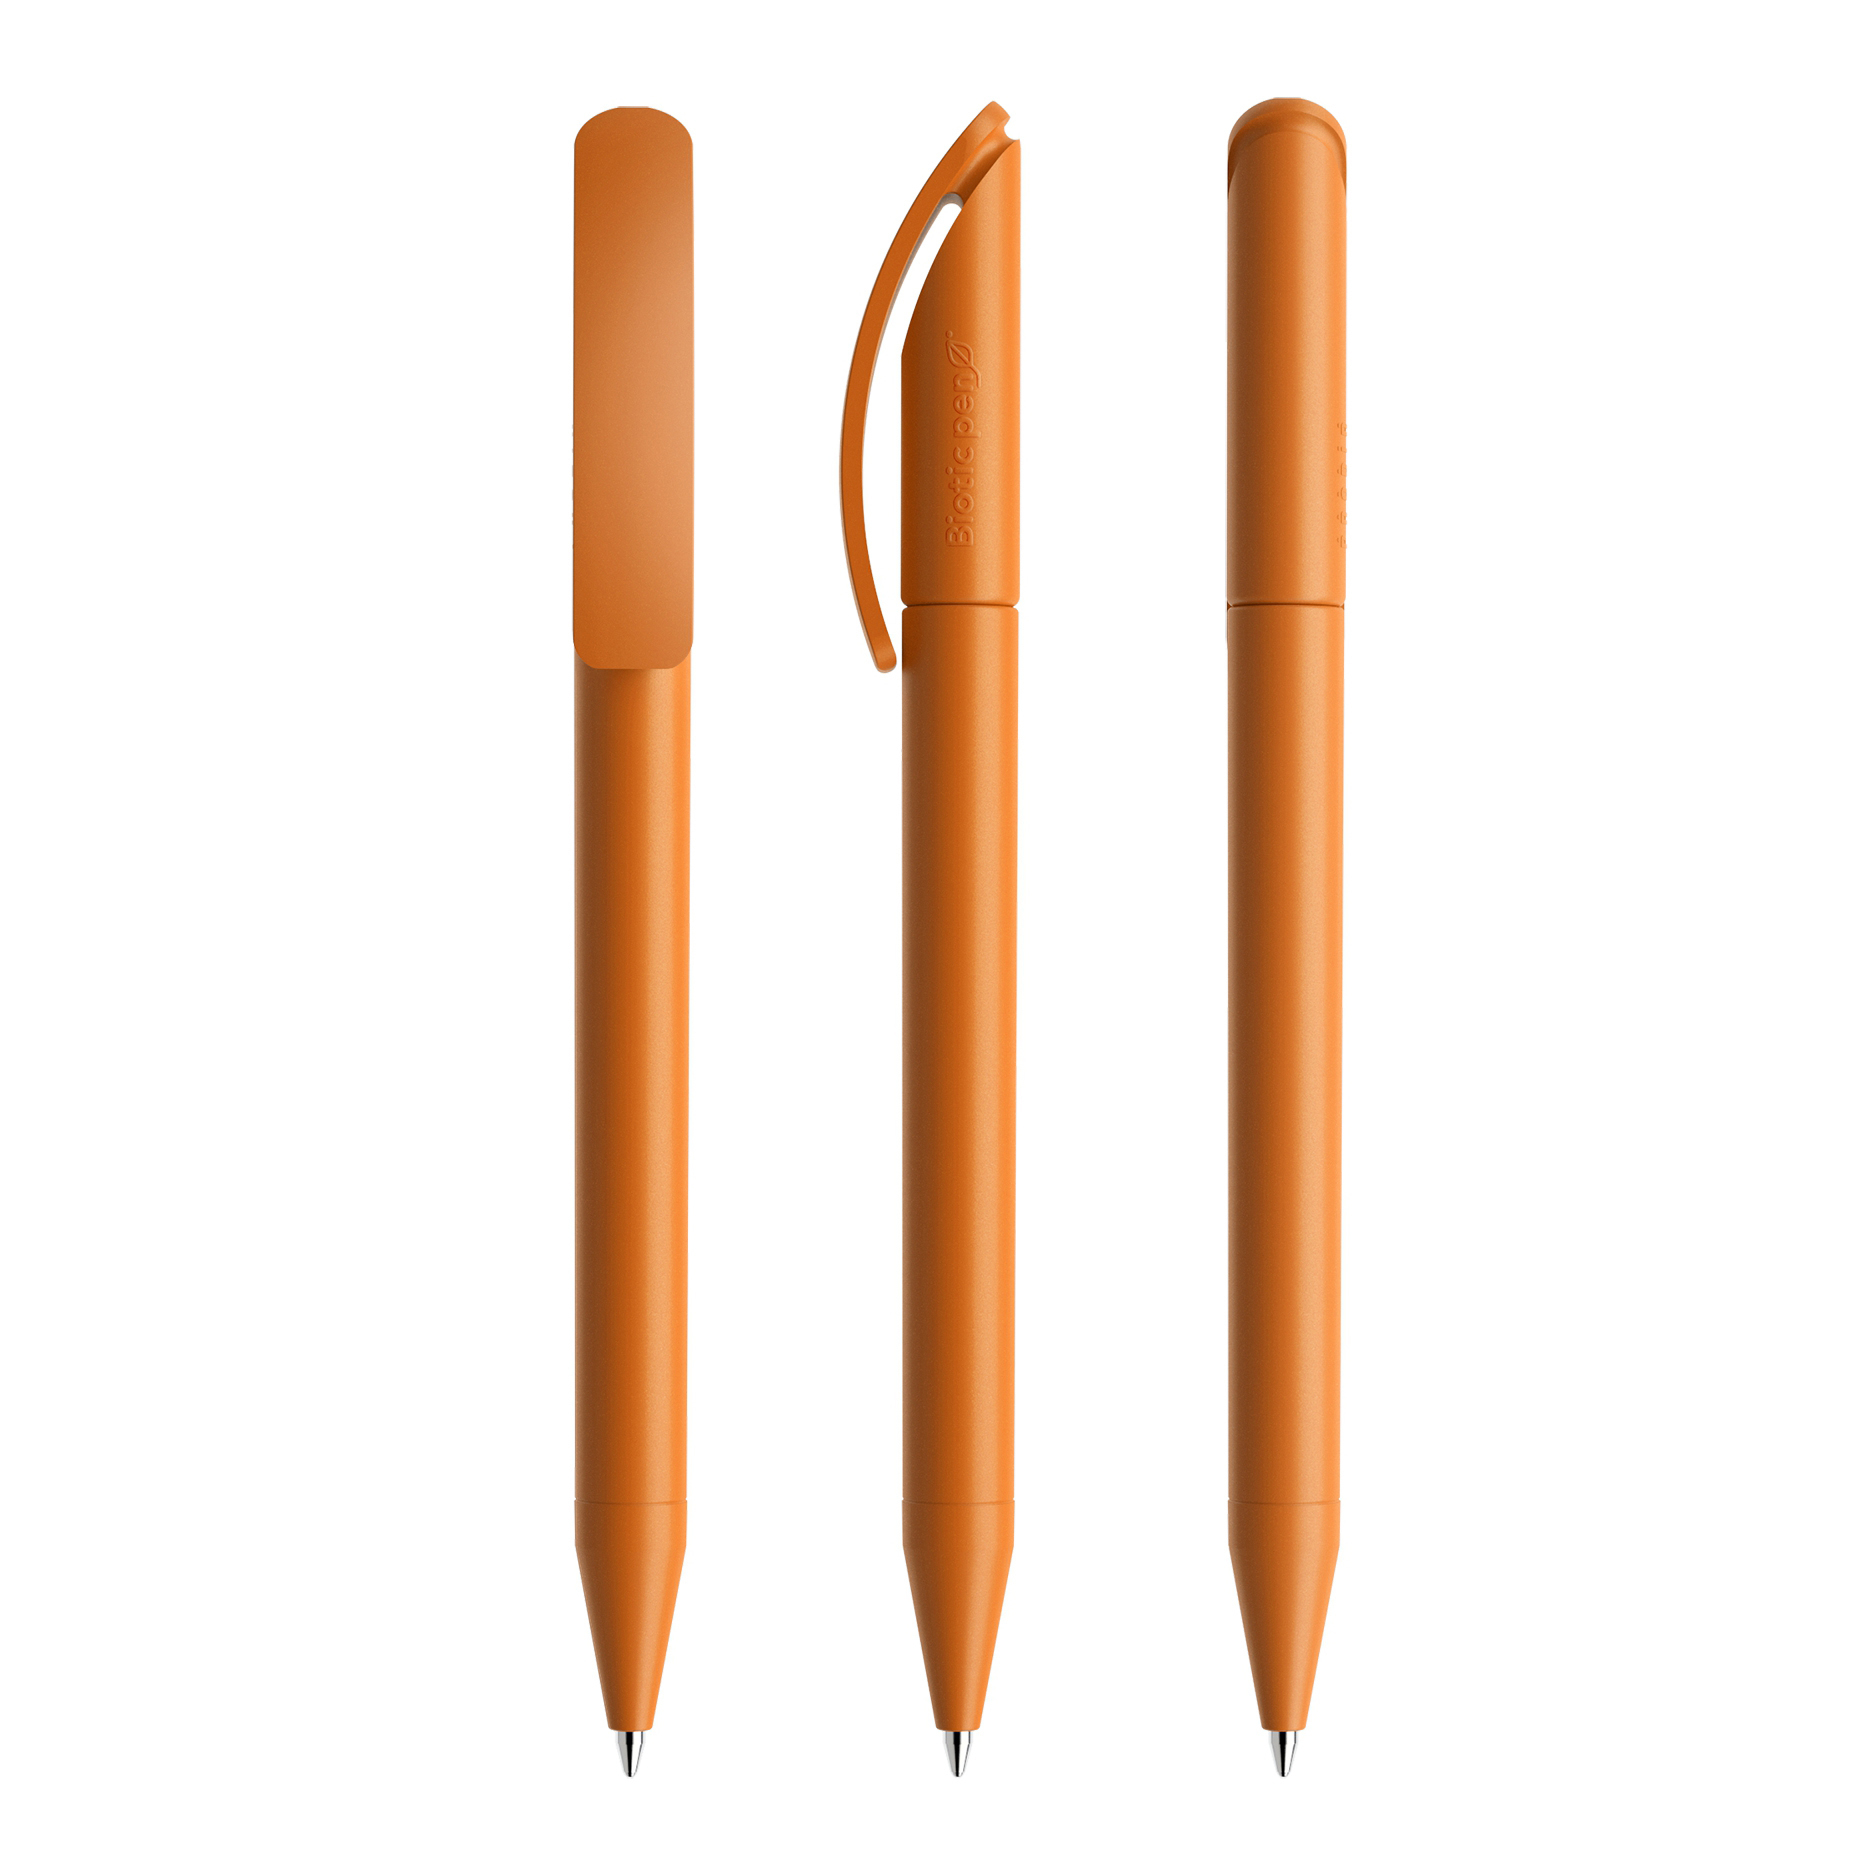 DS3 Biotic pen in orange